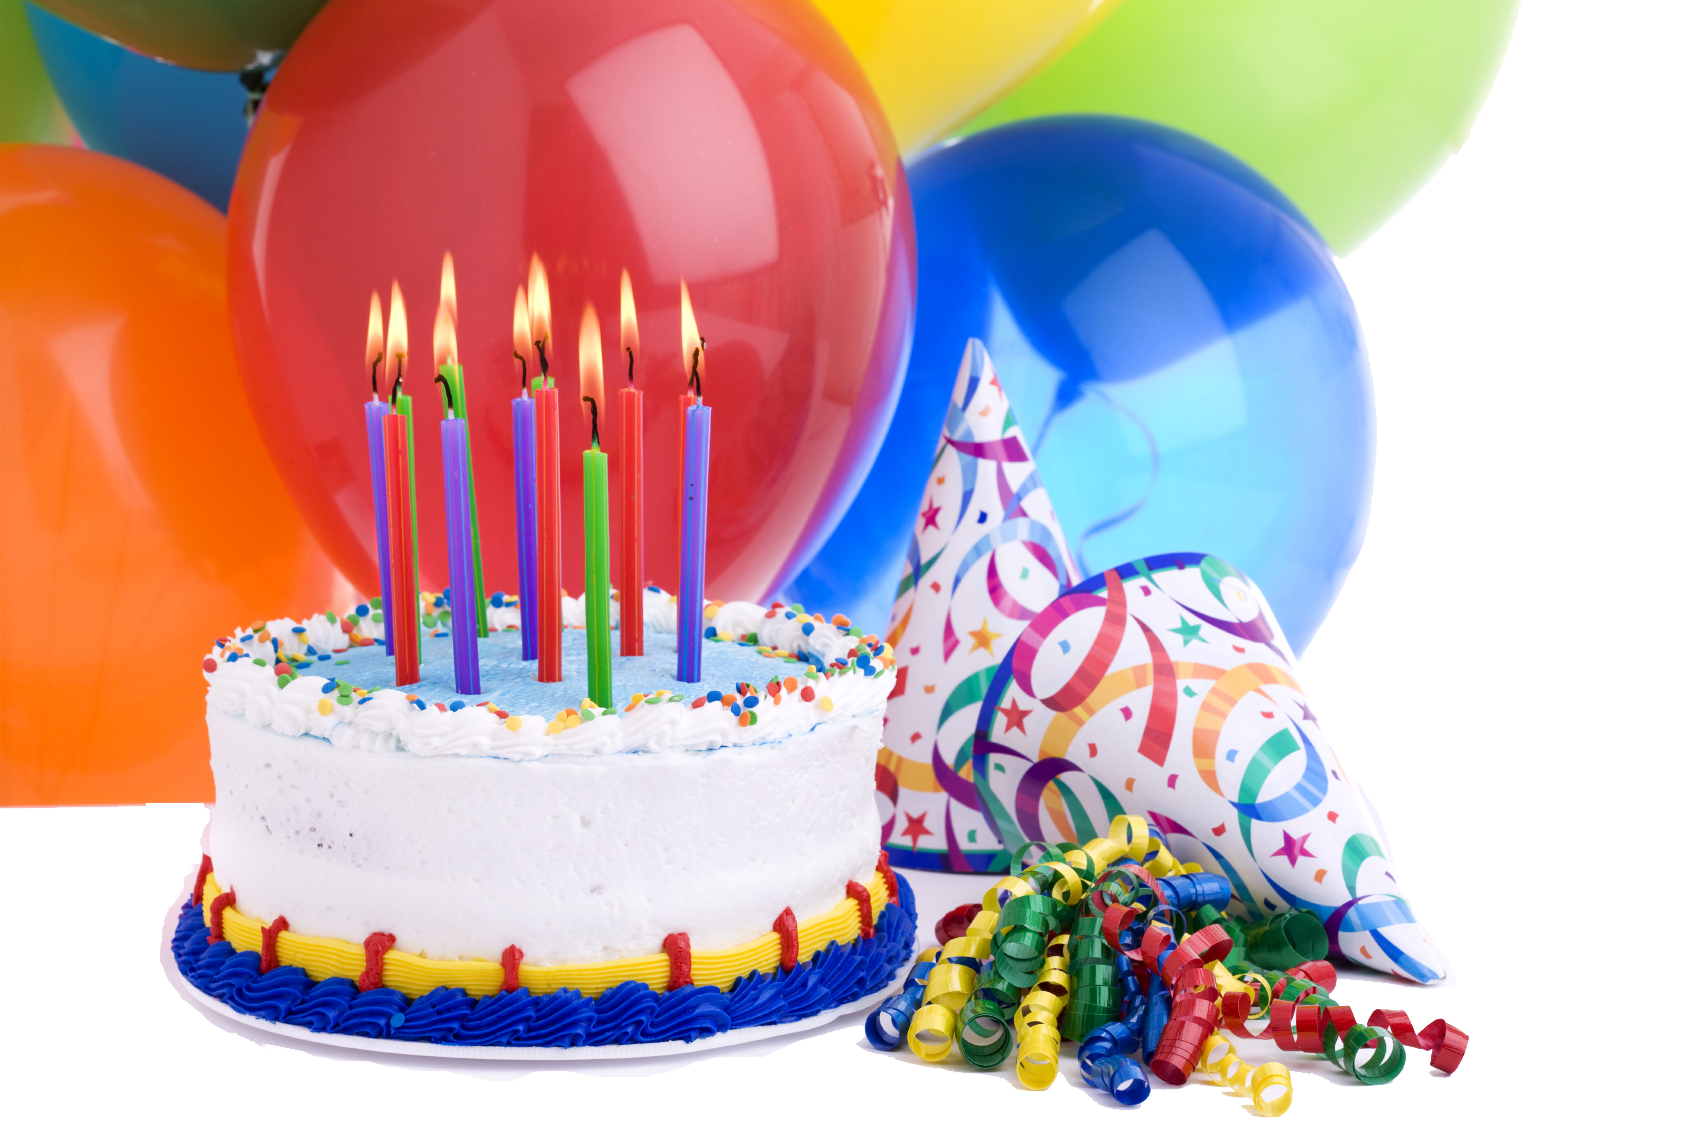 Загадочный день рождения. Праздничный торт. С днем рождения. Шары ИТ торты с днем рождения. С днём рождения тортик и шарики.